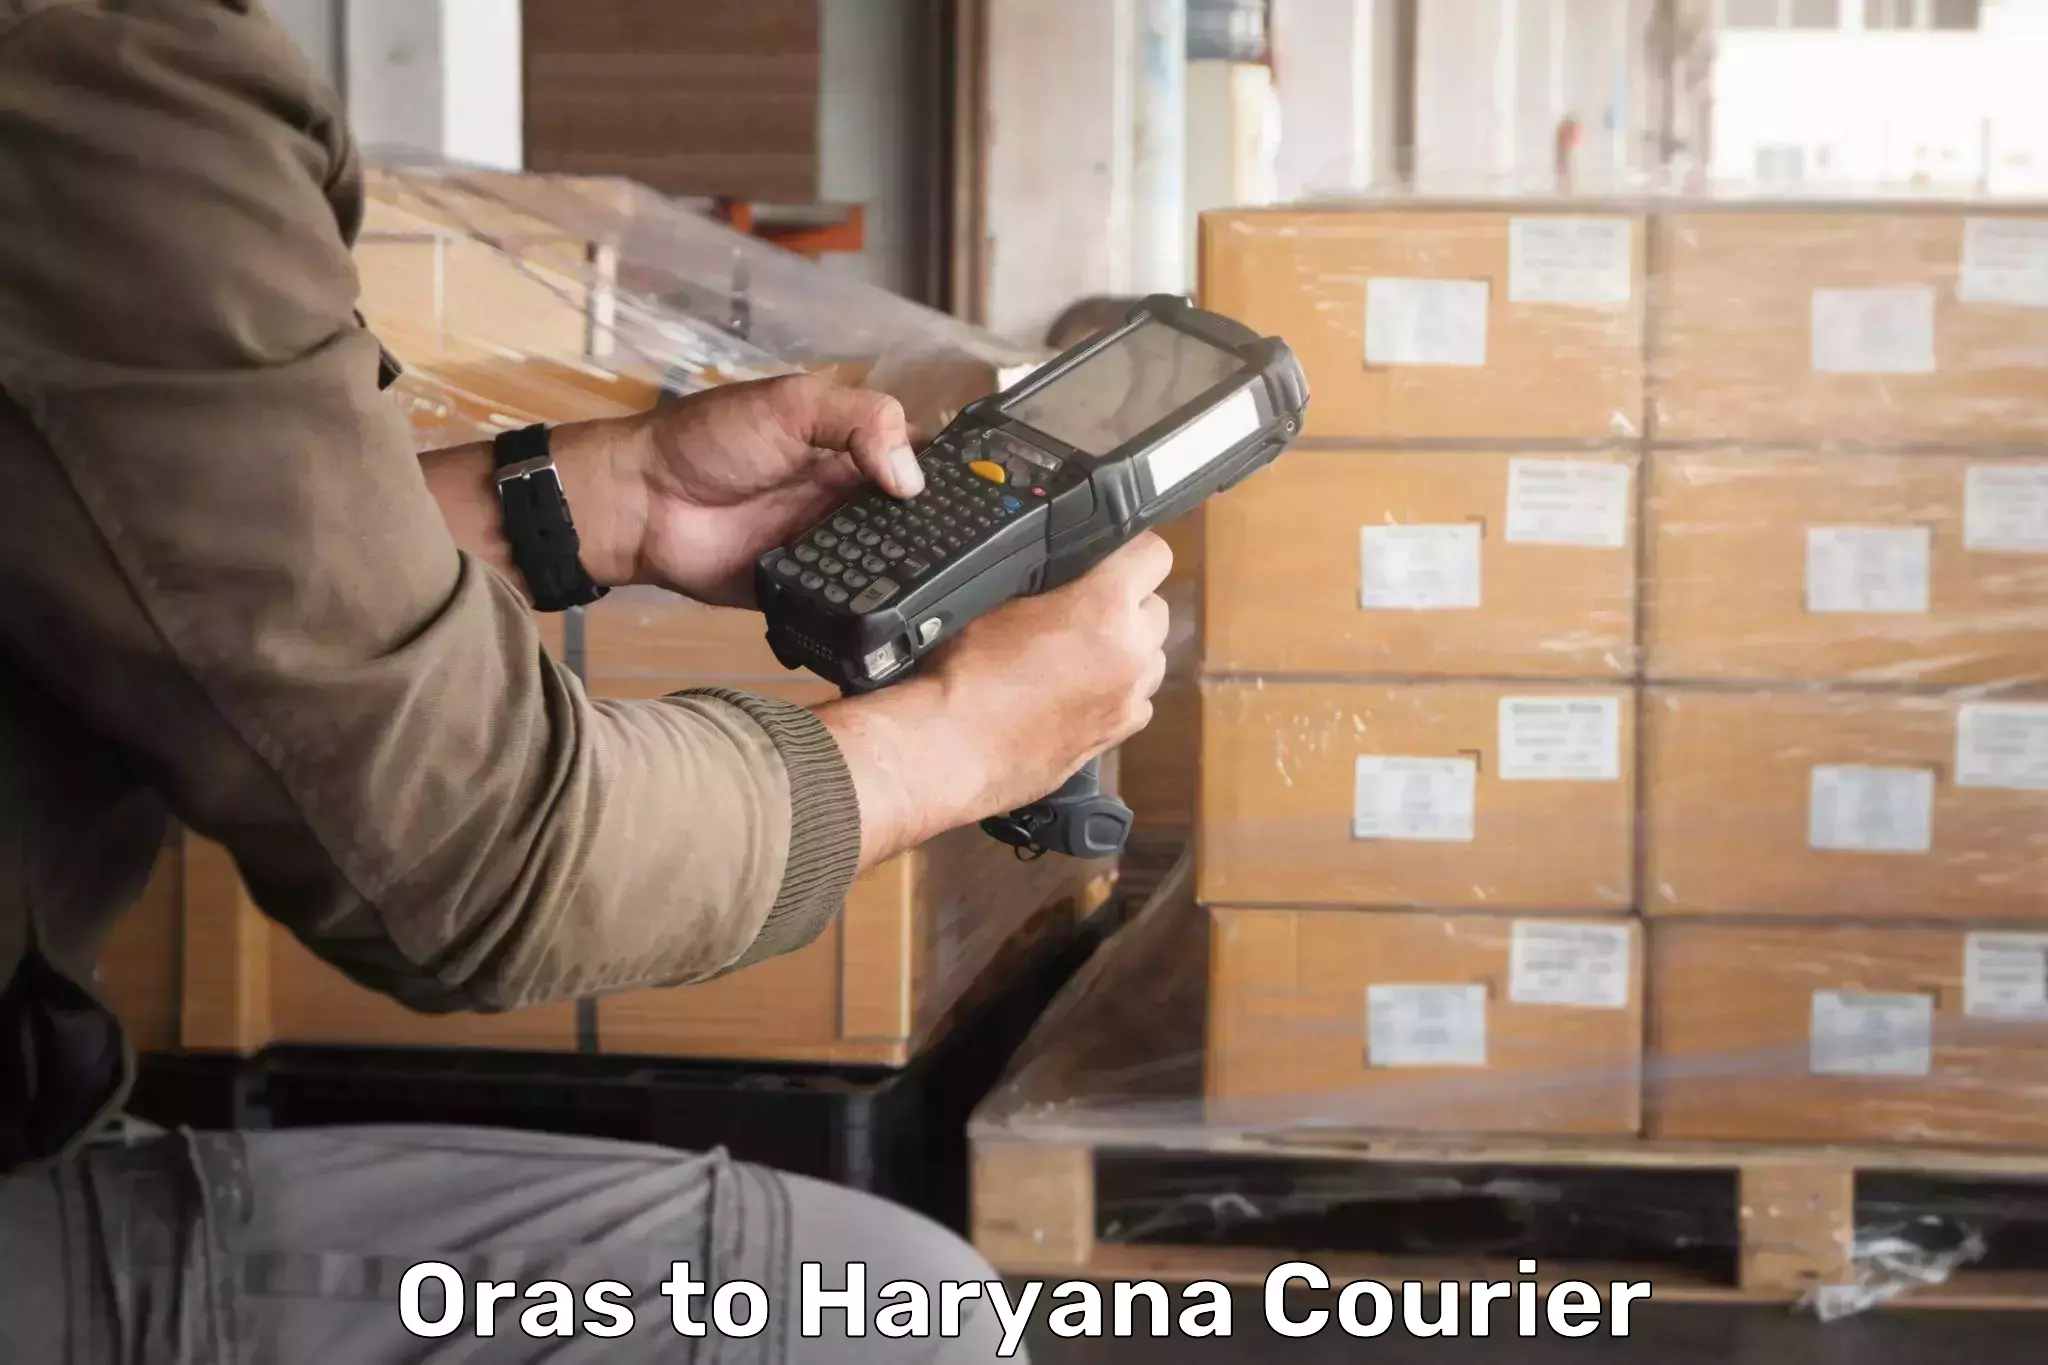 Urban courier service Oras to Taraori